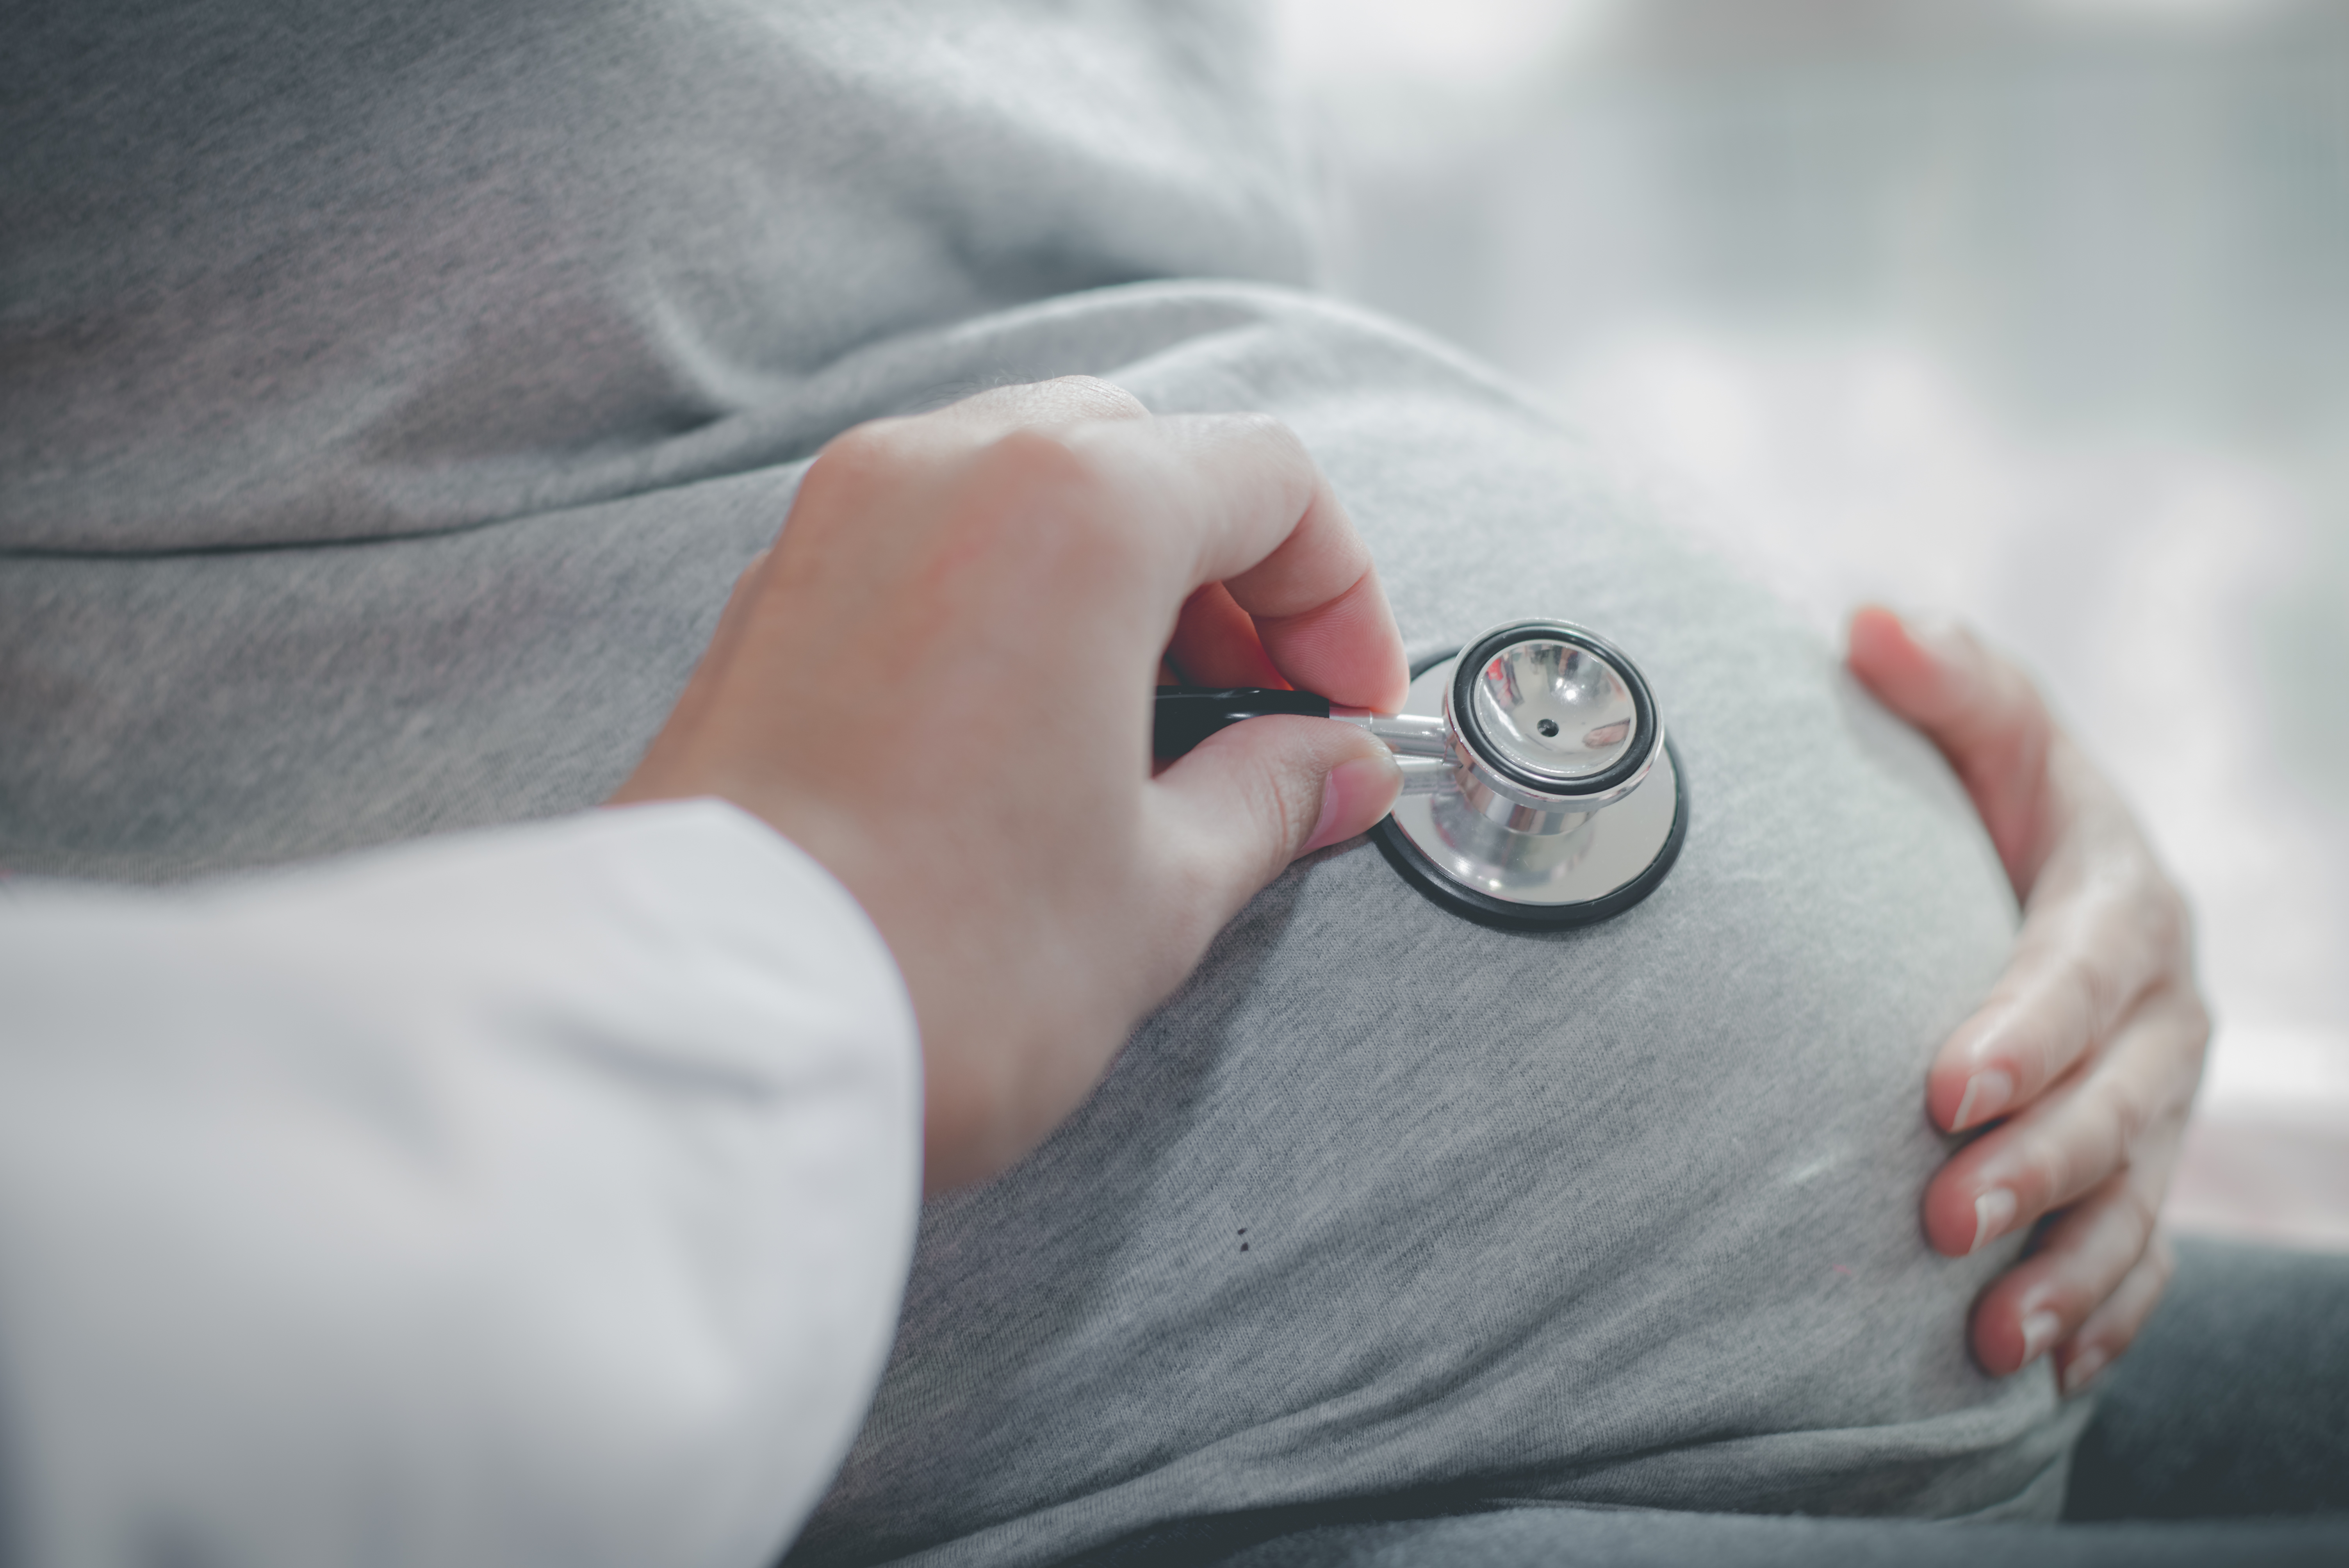 Crescimento fetal: Como medir e identificar riscos na gravidez